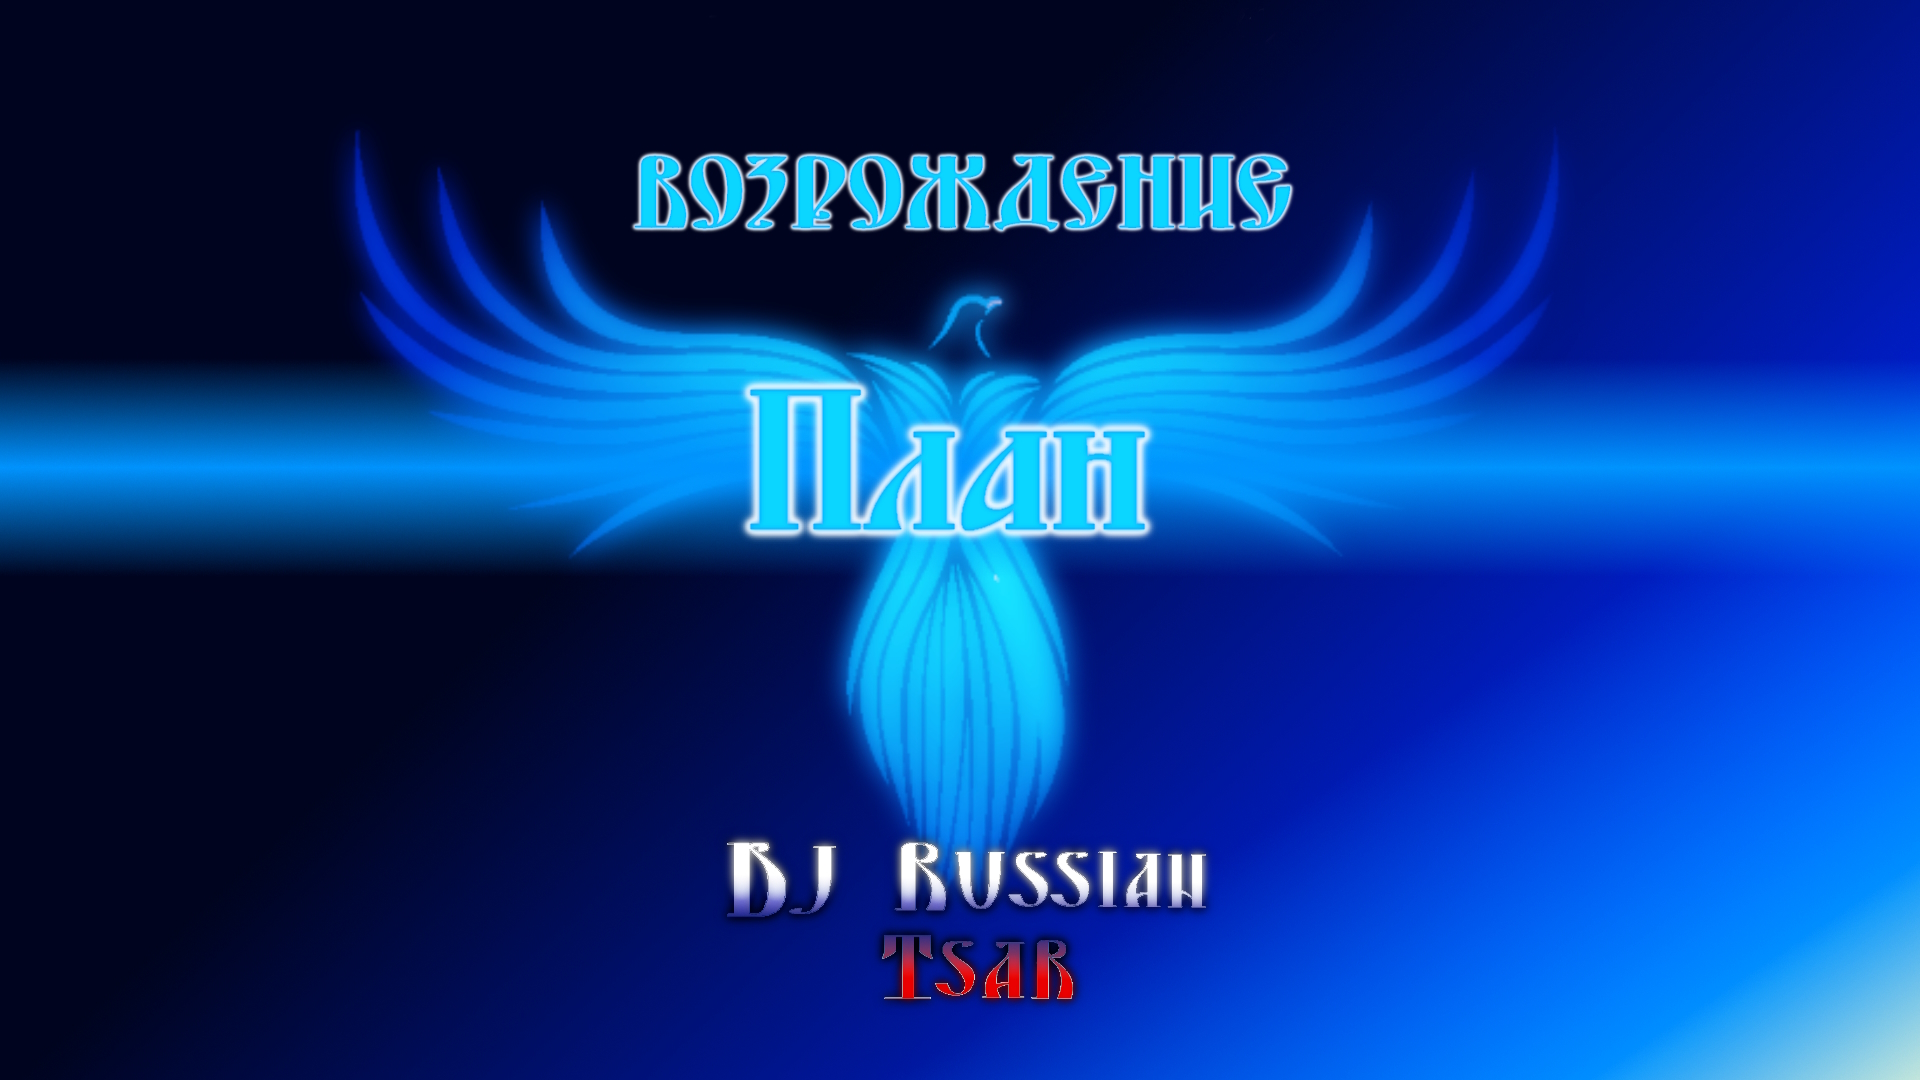 DJ Russian Tsar - План (Audio Official)